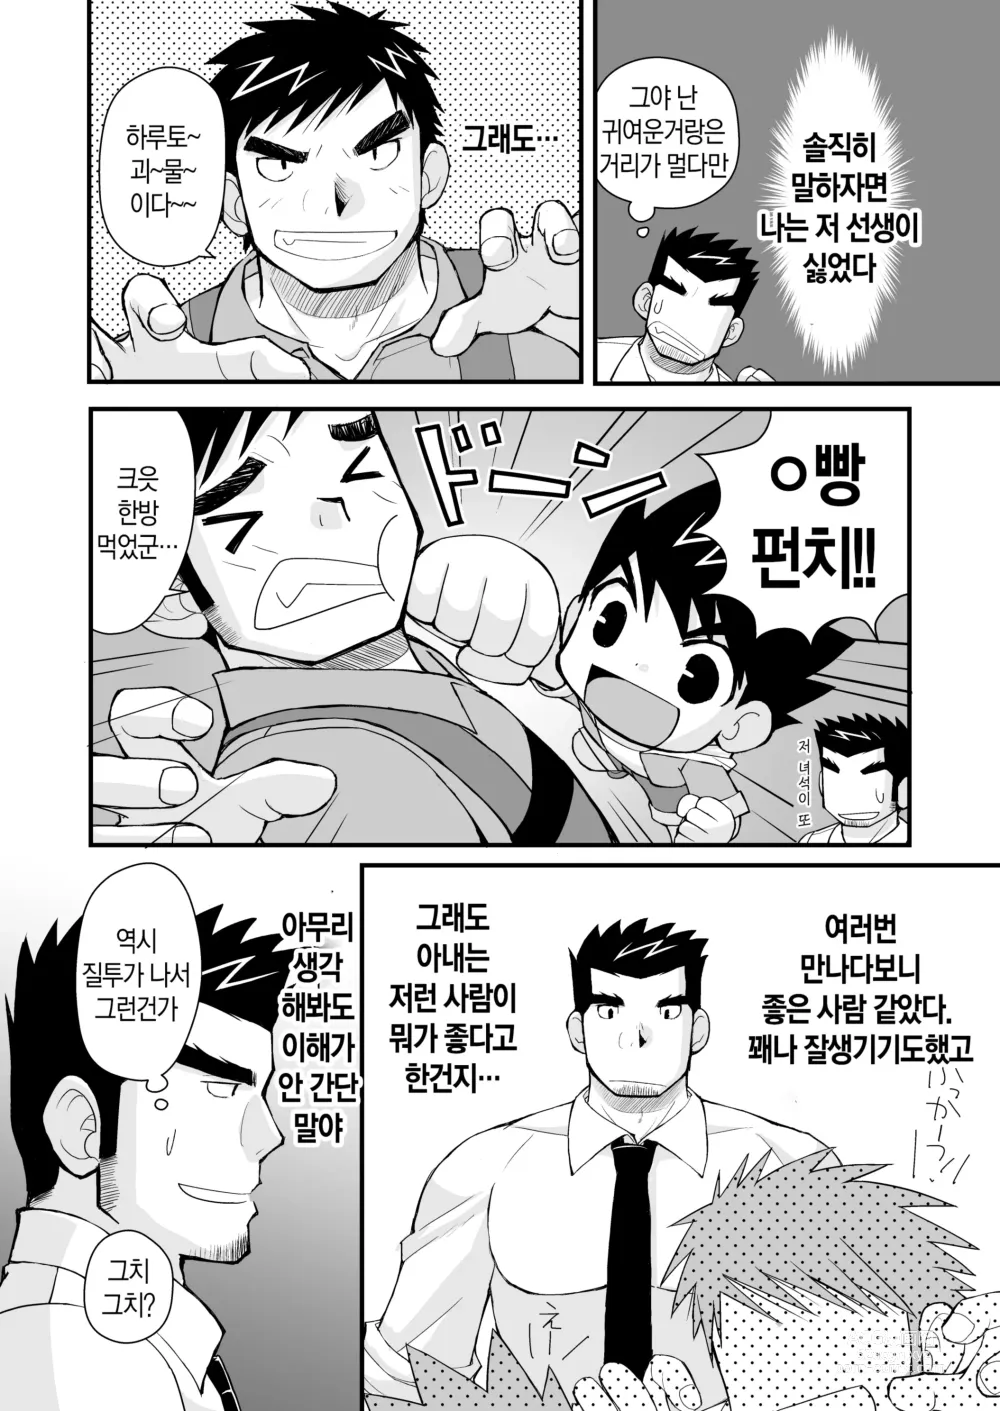 Page 7 of doujinshi 케이타 선생님과 우리 아빠